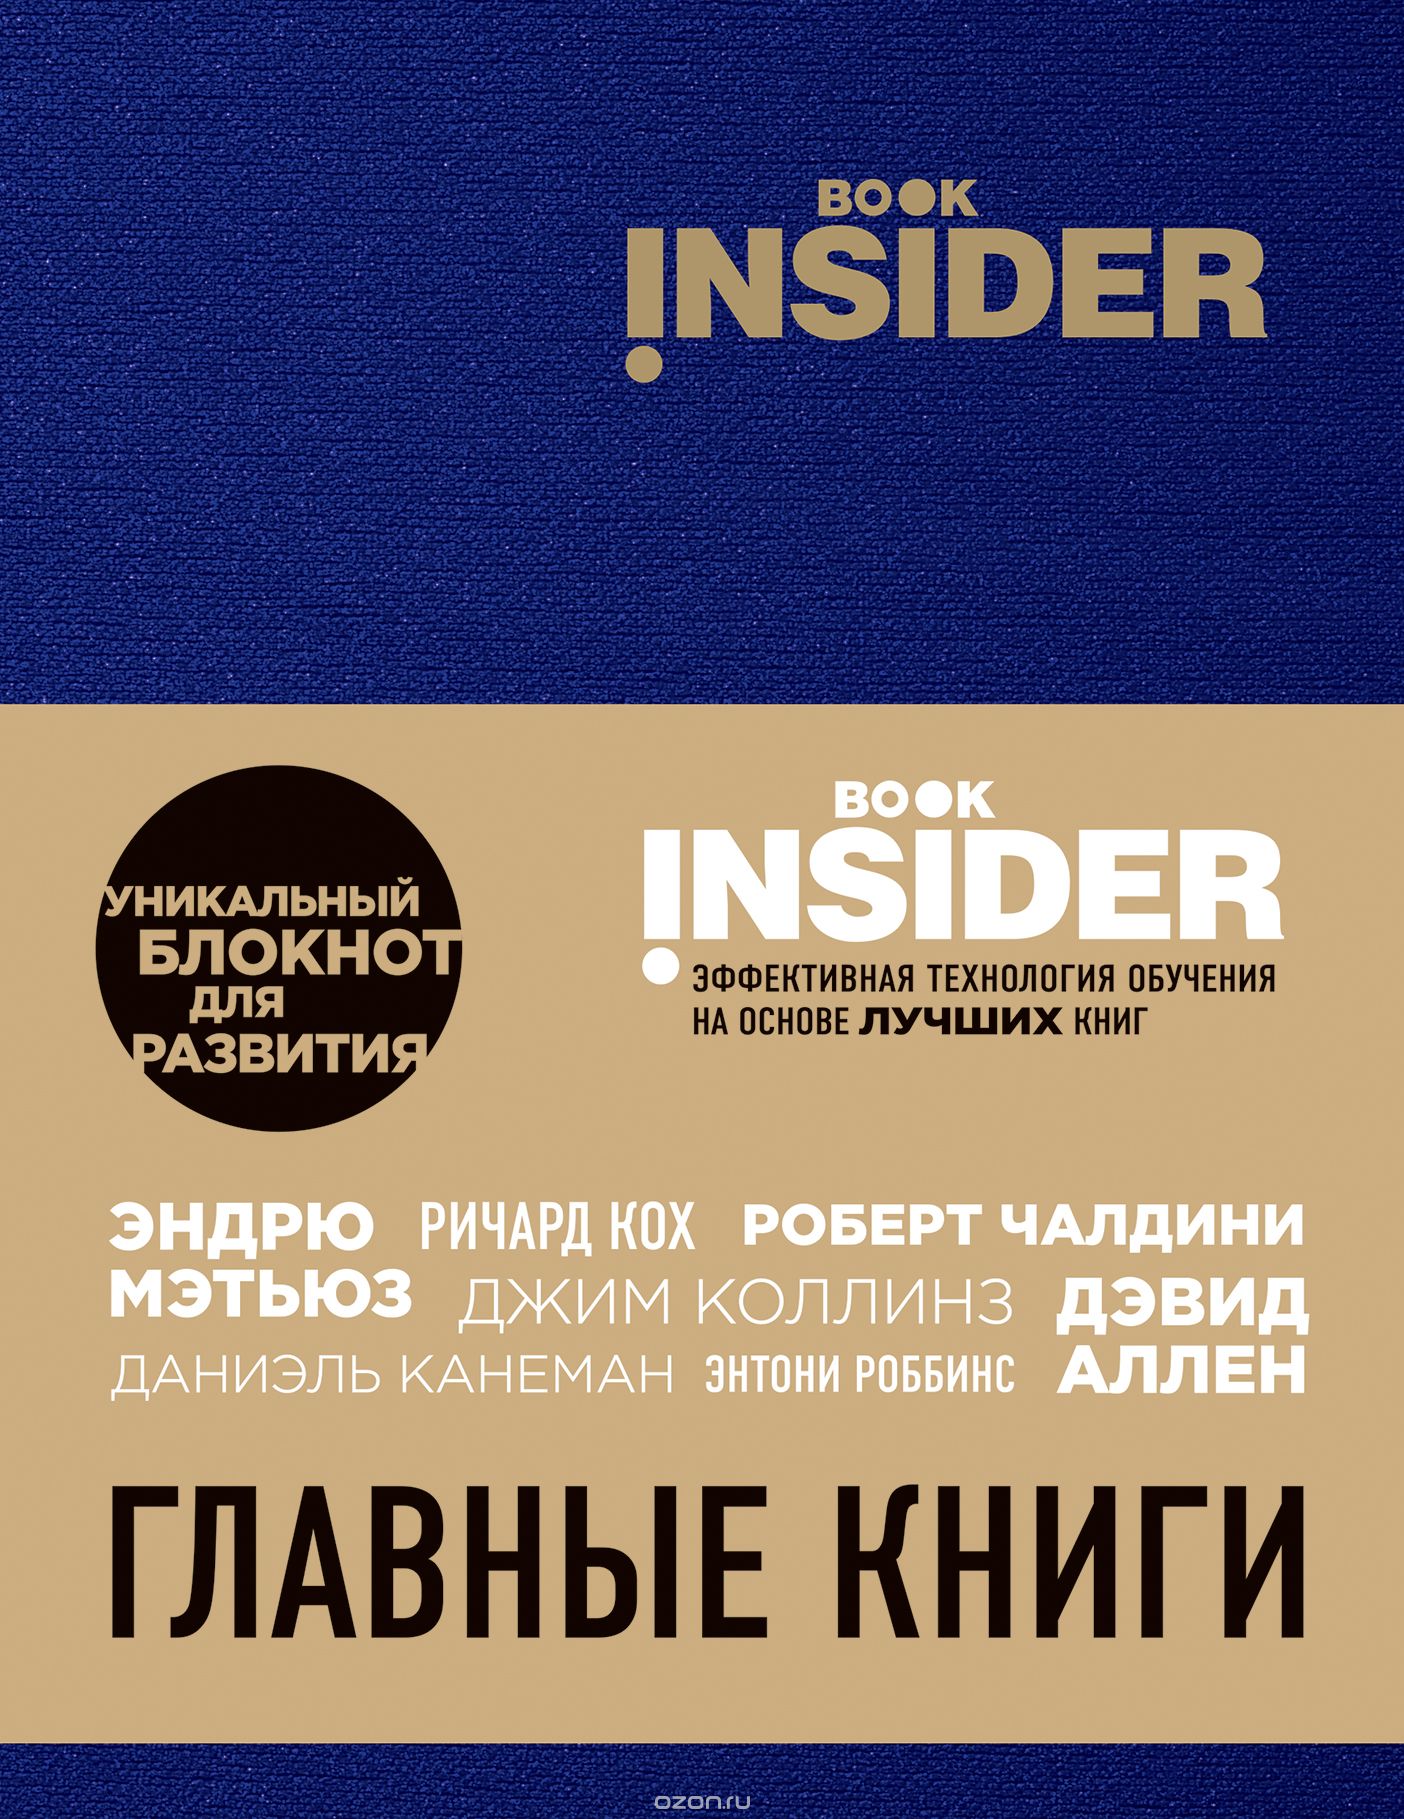 Book Insider. Главные книги, И. Пинтосевич, Г. Аветов